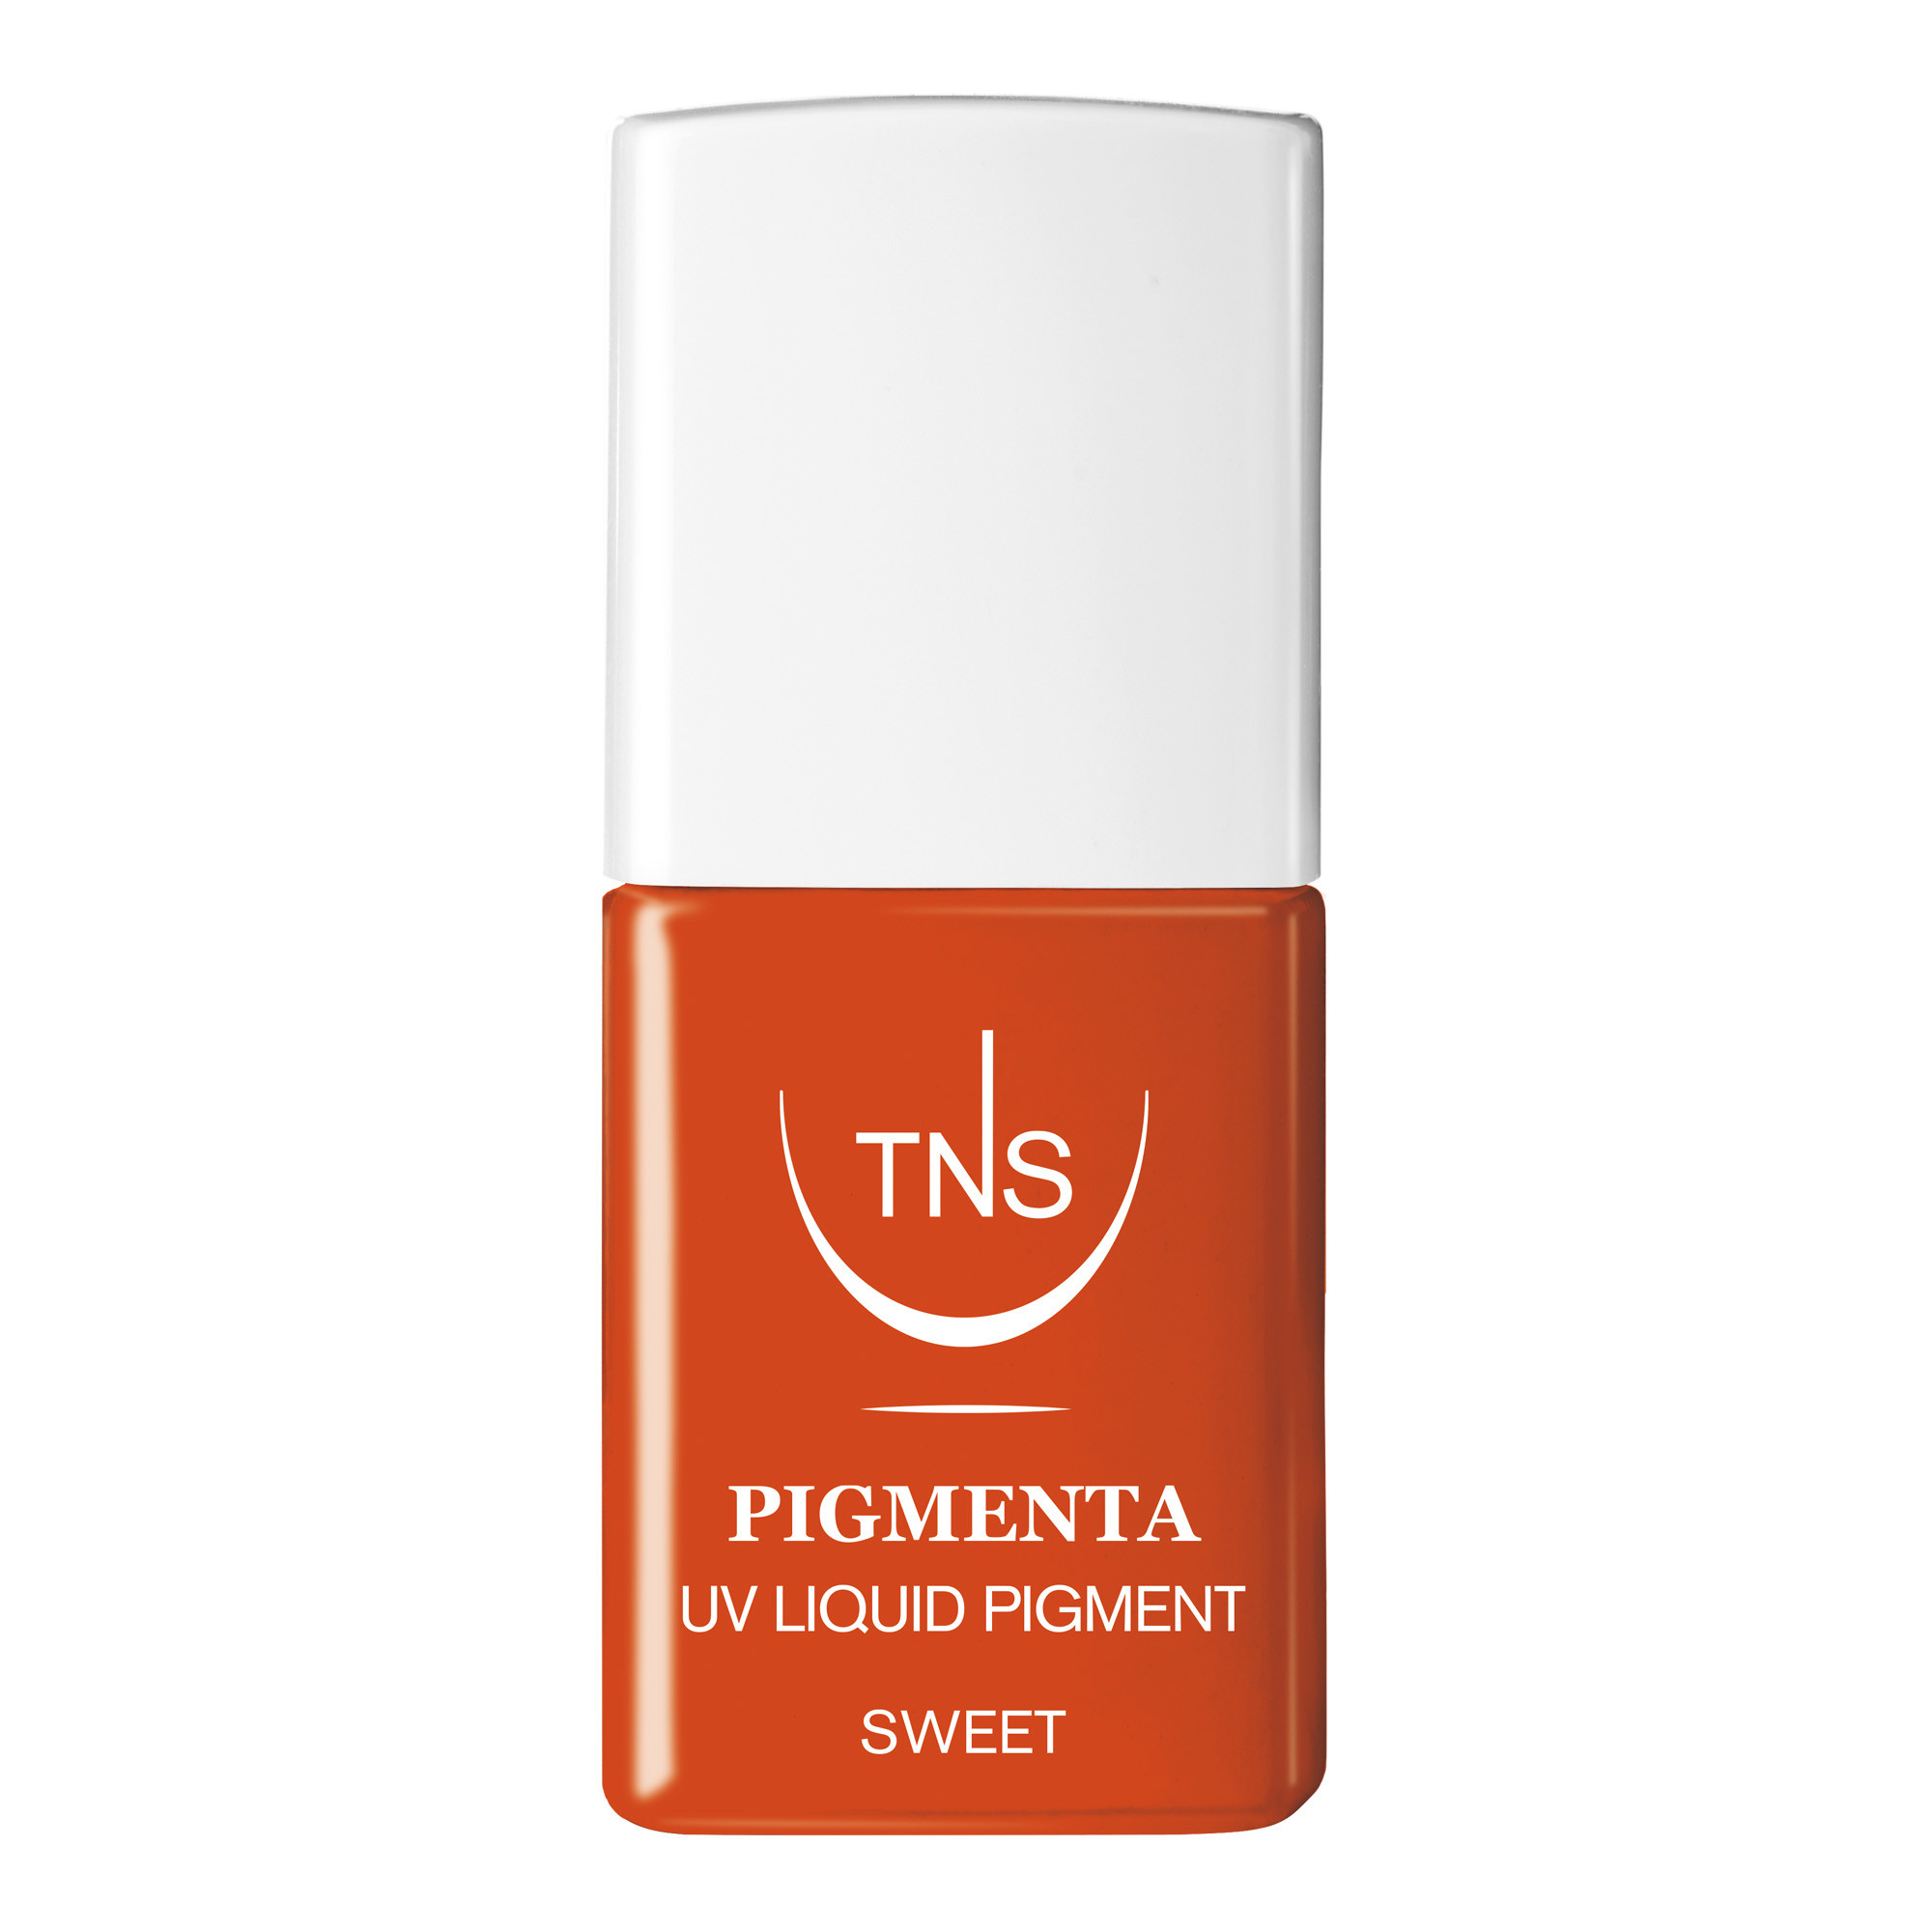 UV Flüssigpigment Sweet orange 10 ml Pigmenta TNS